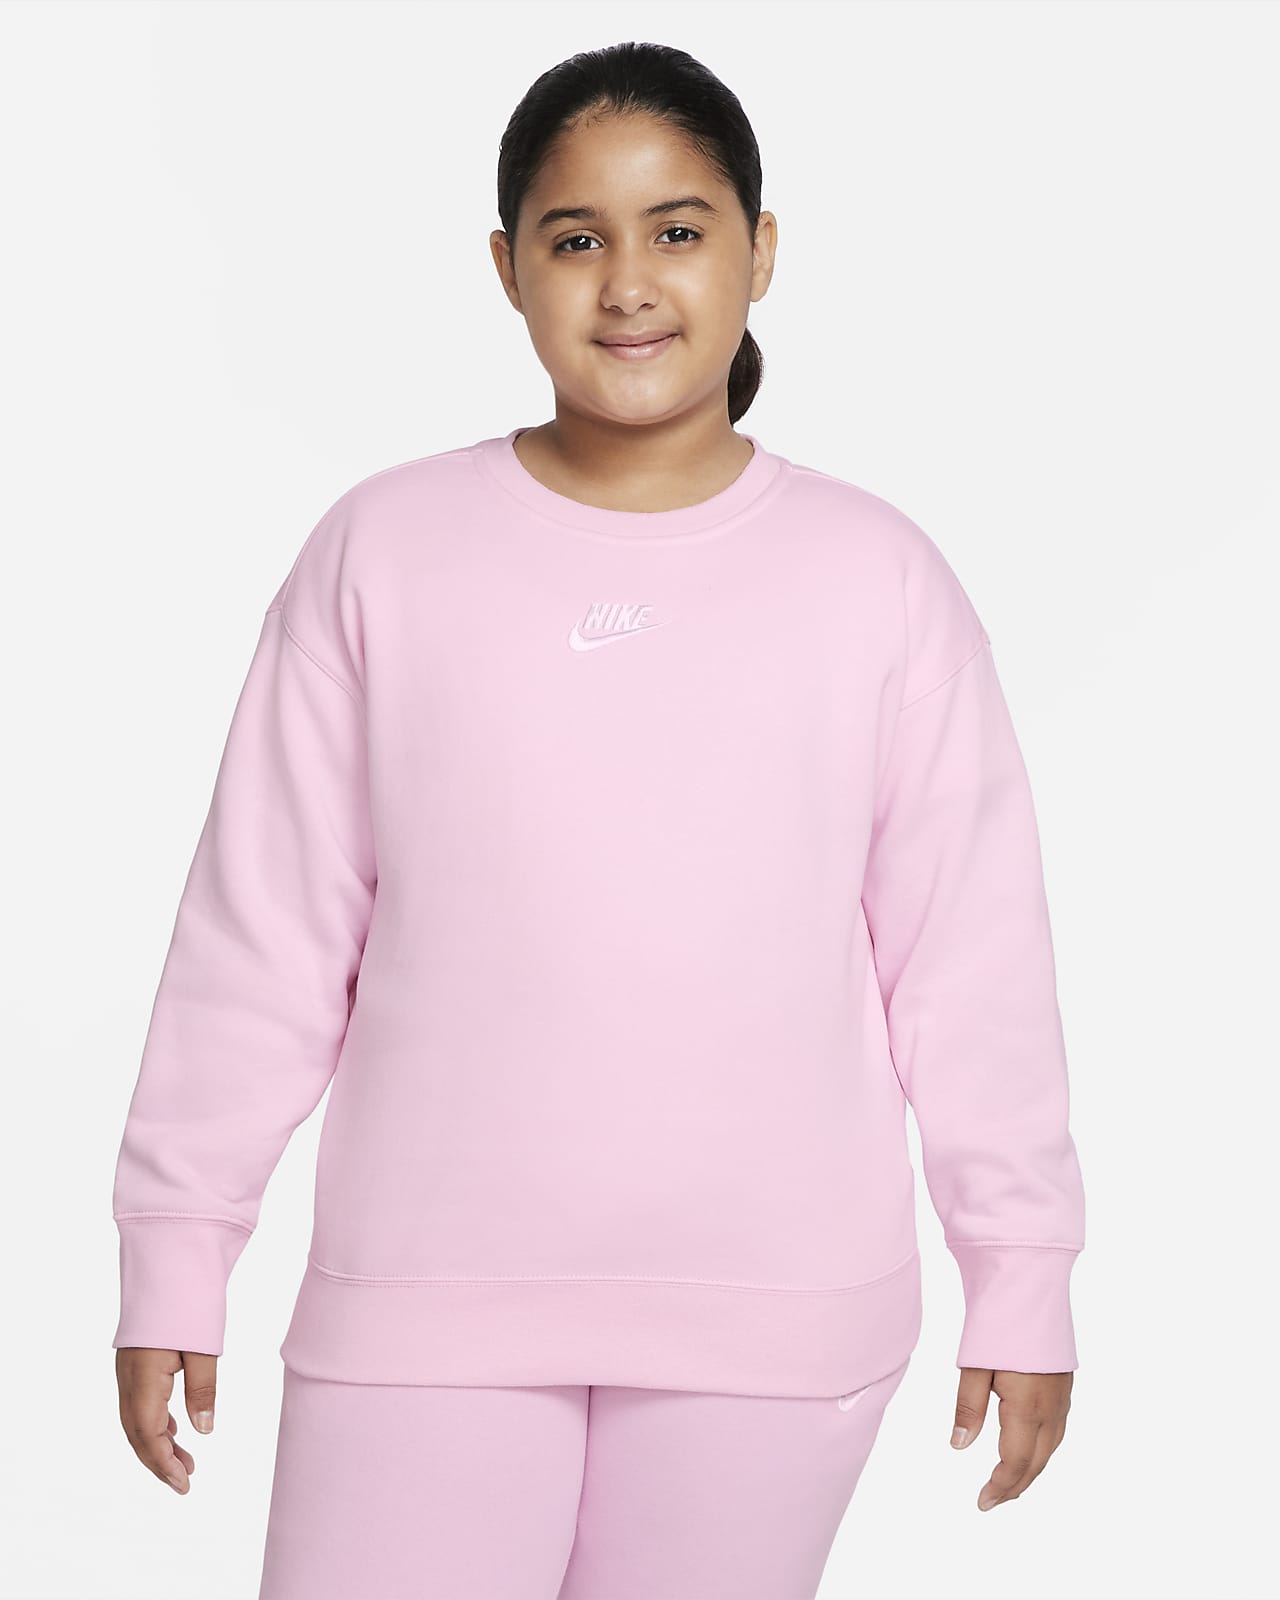 Свитшот для девочек школьного возраста Nike Sportswear Club Fleece (расширенный размерный ряд)